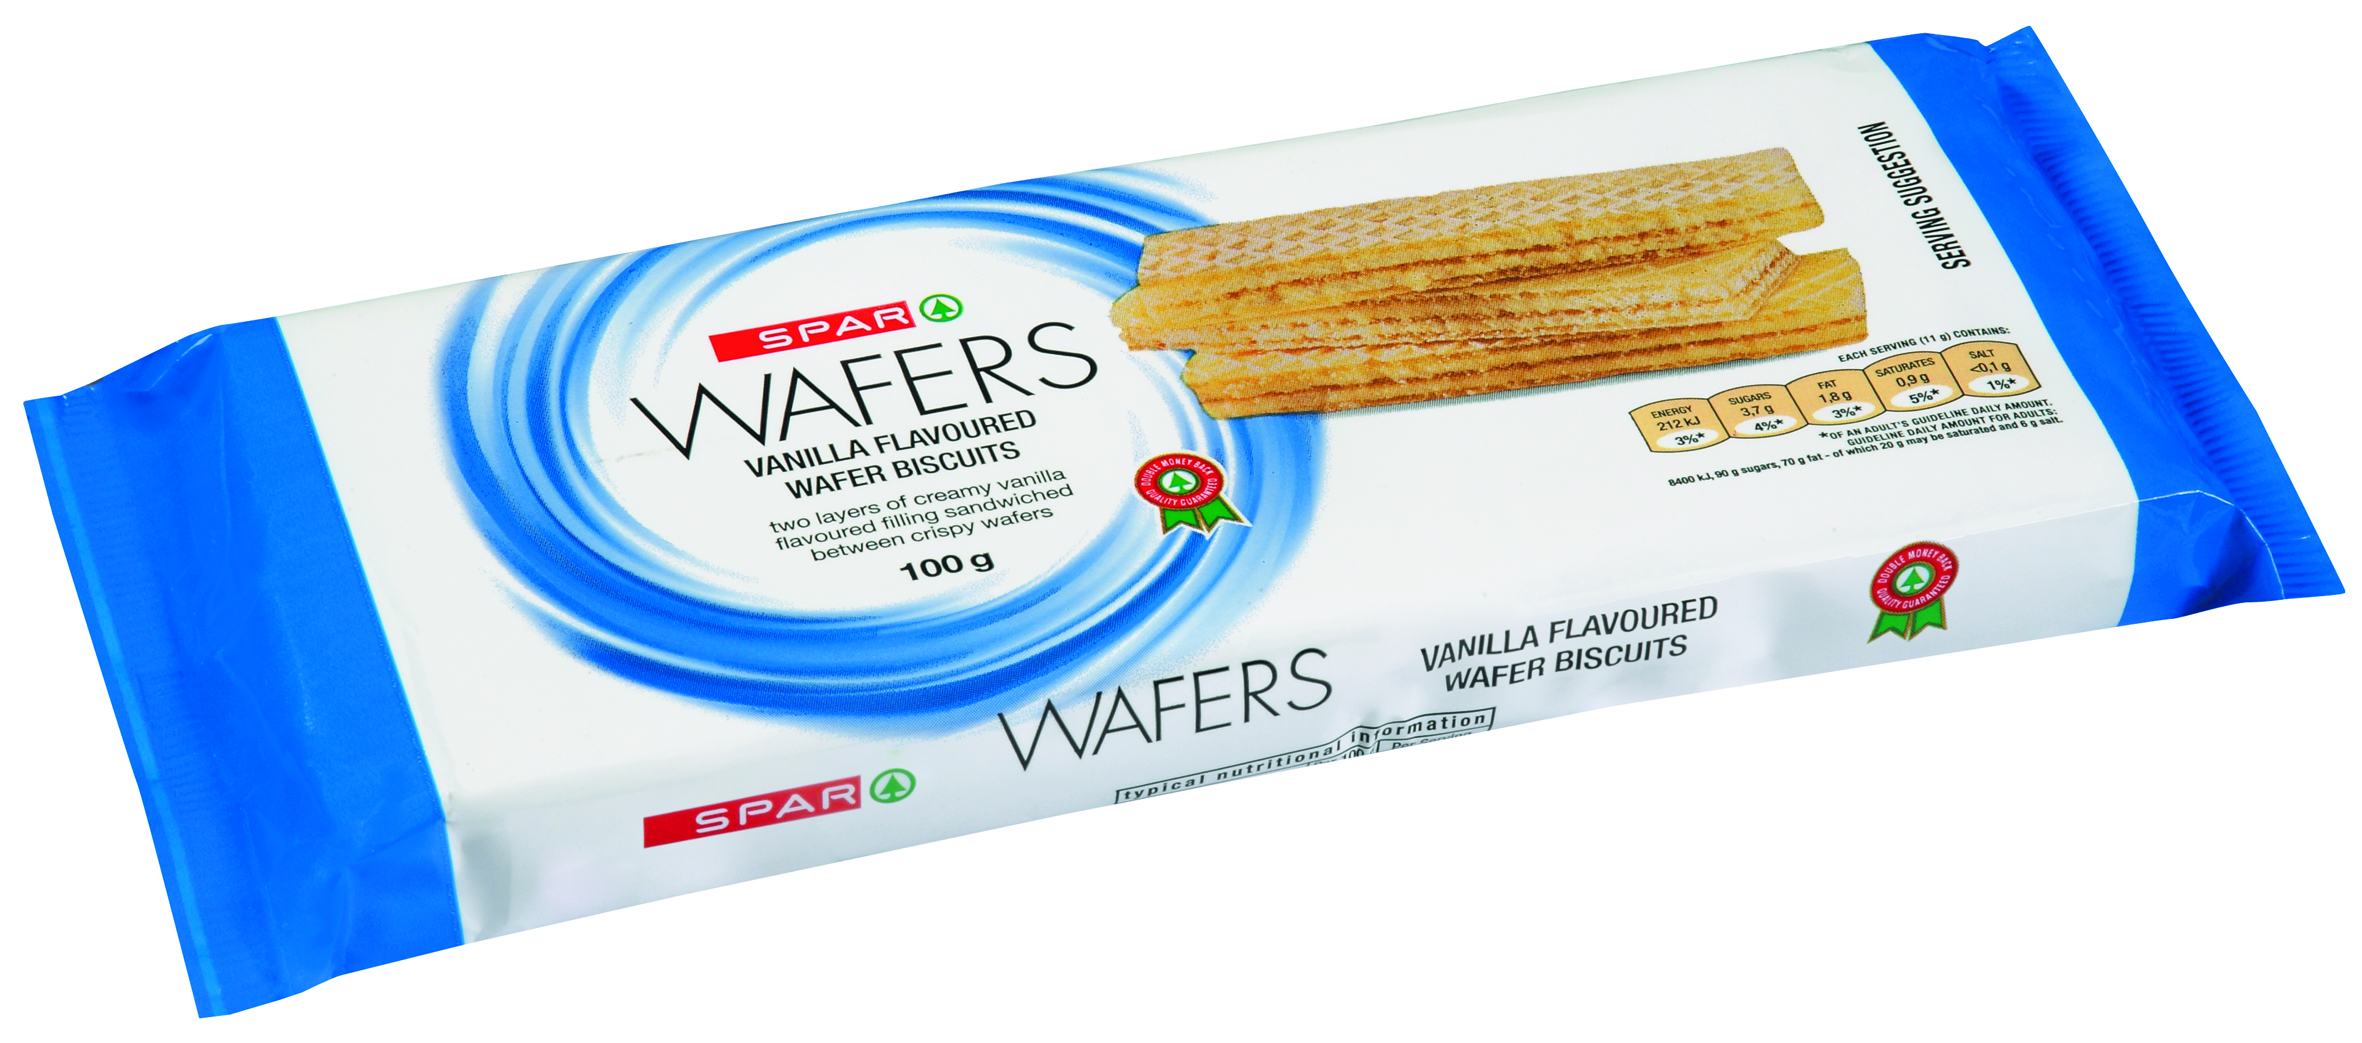 wafer biscuits - vanilla flavoured